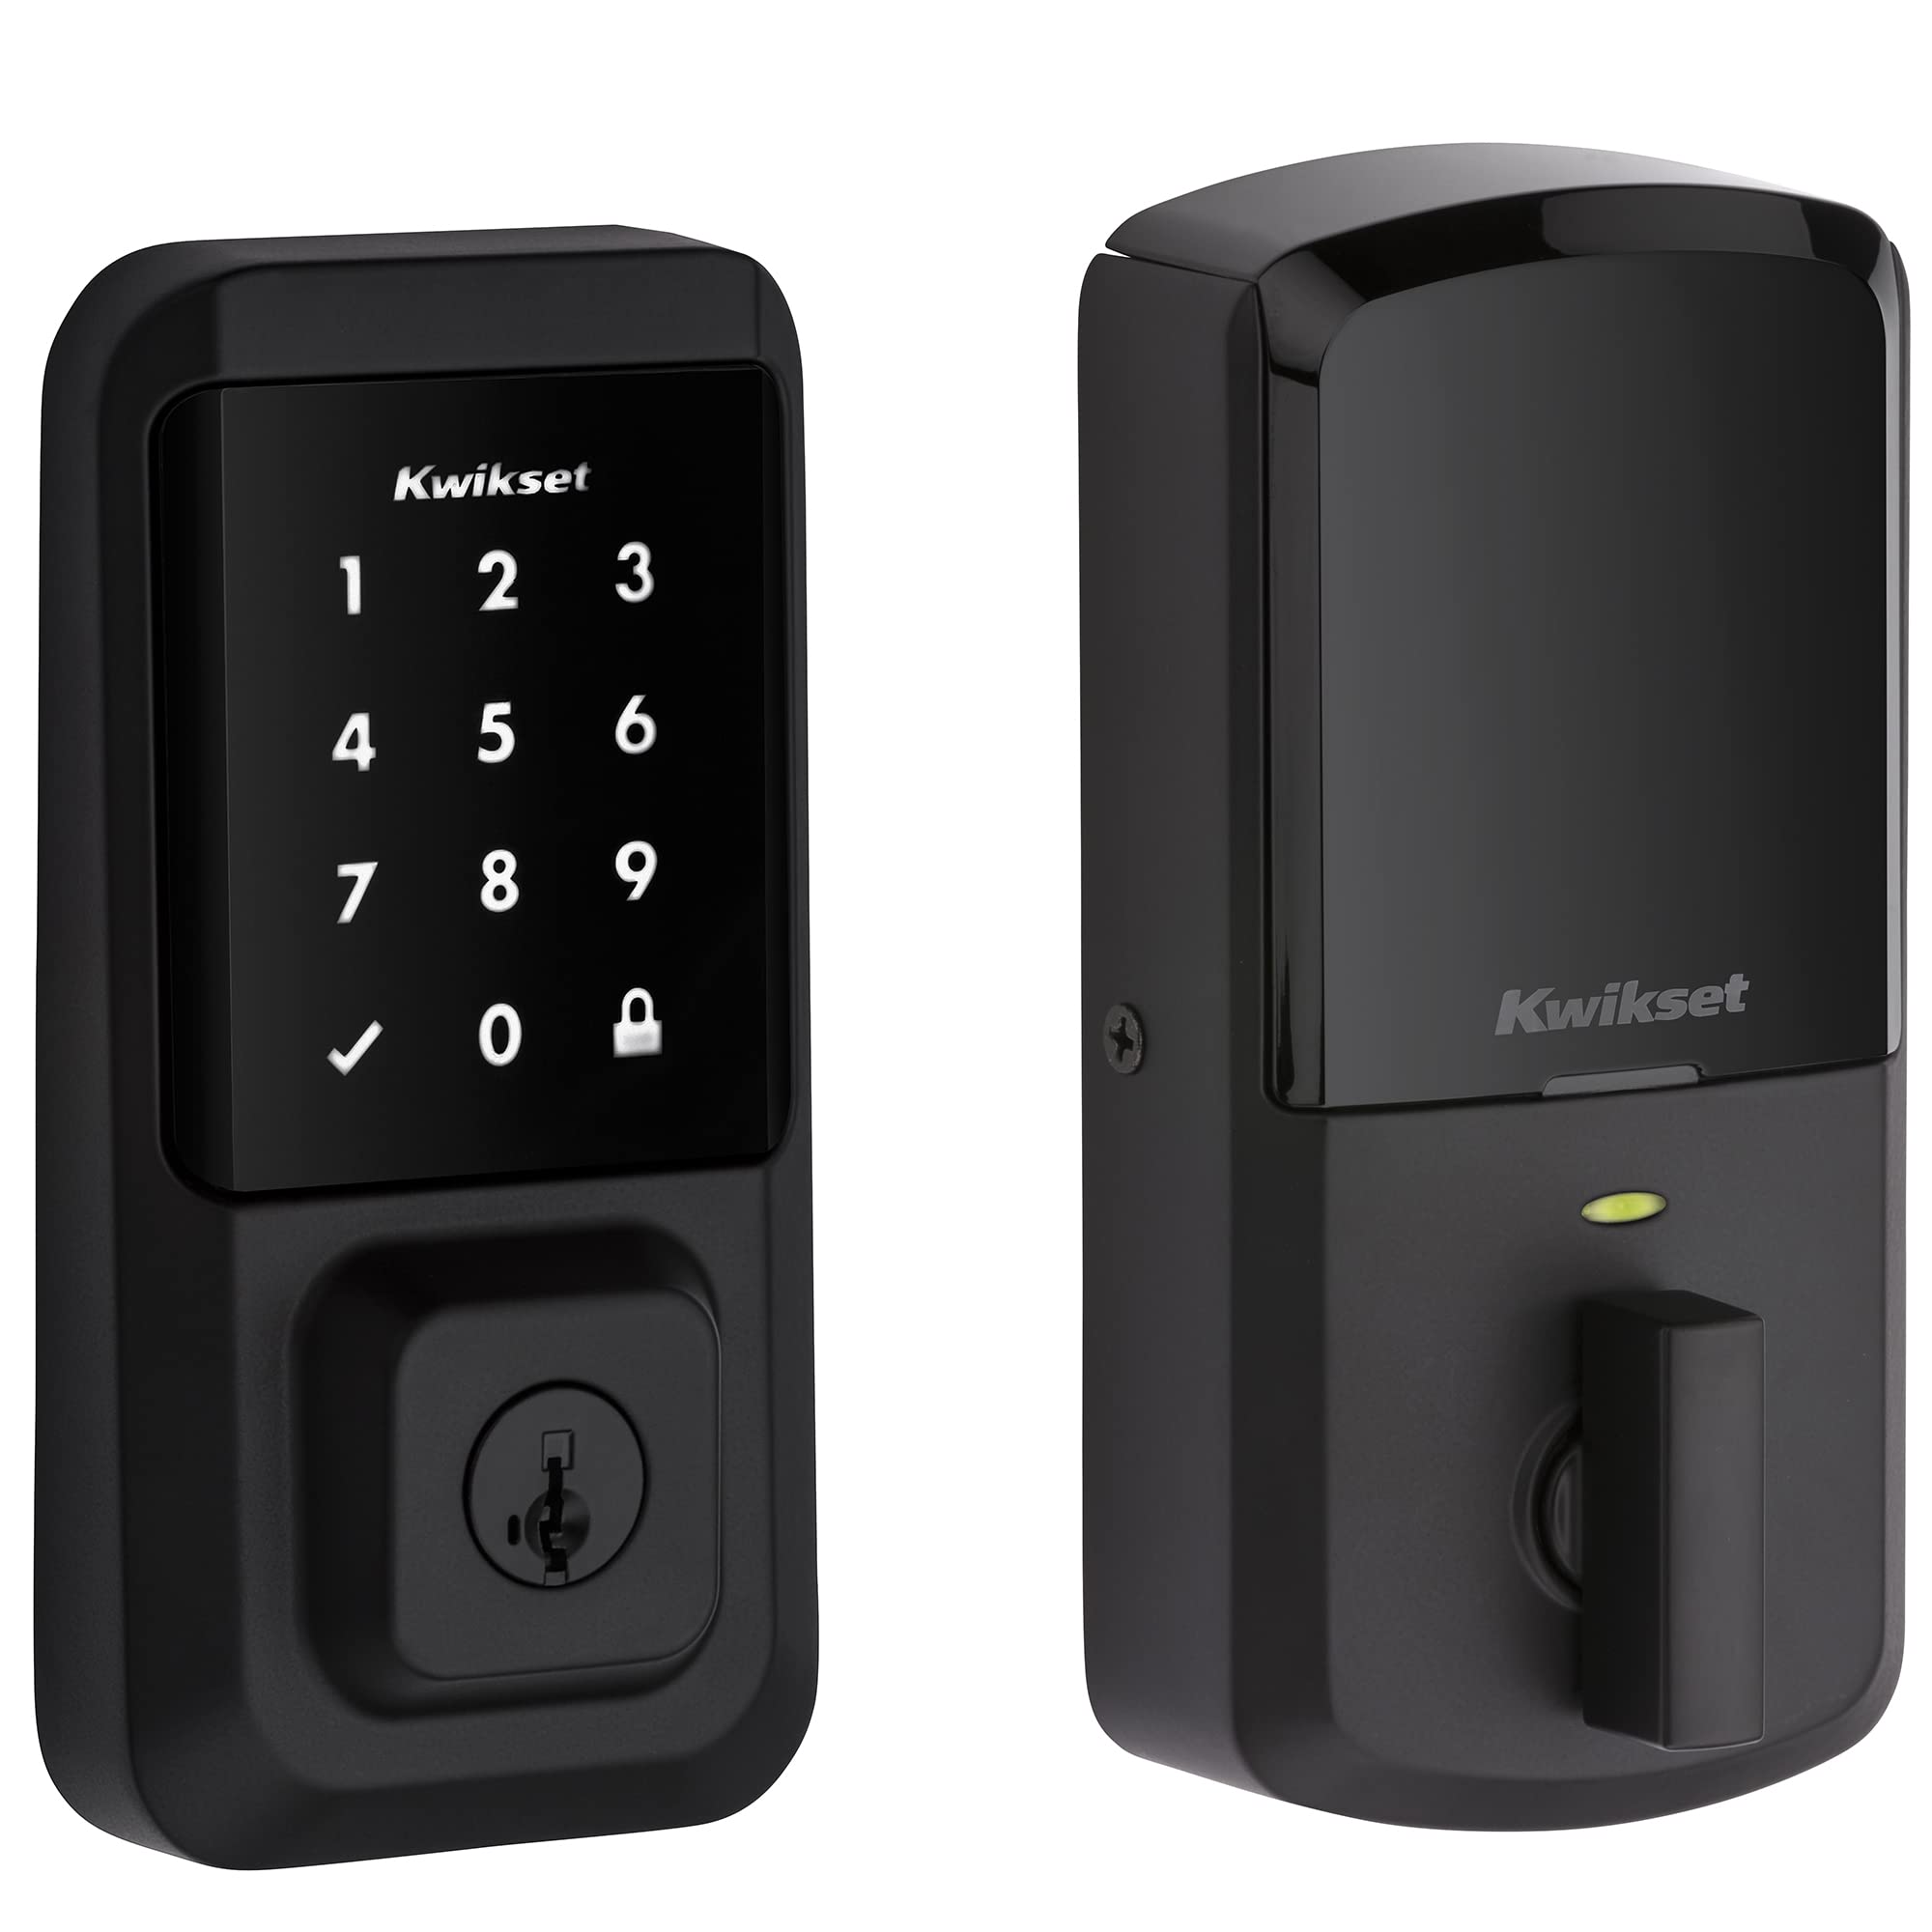 Kwikset 99390-001 Halo Wi-Fi Smart Lock دخول بدون مفتاح شاشة لمس إلكترونية ديدبولت تتميز بأمان SmartKey